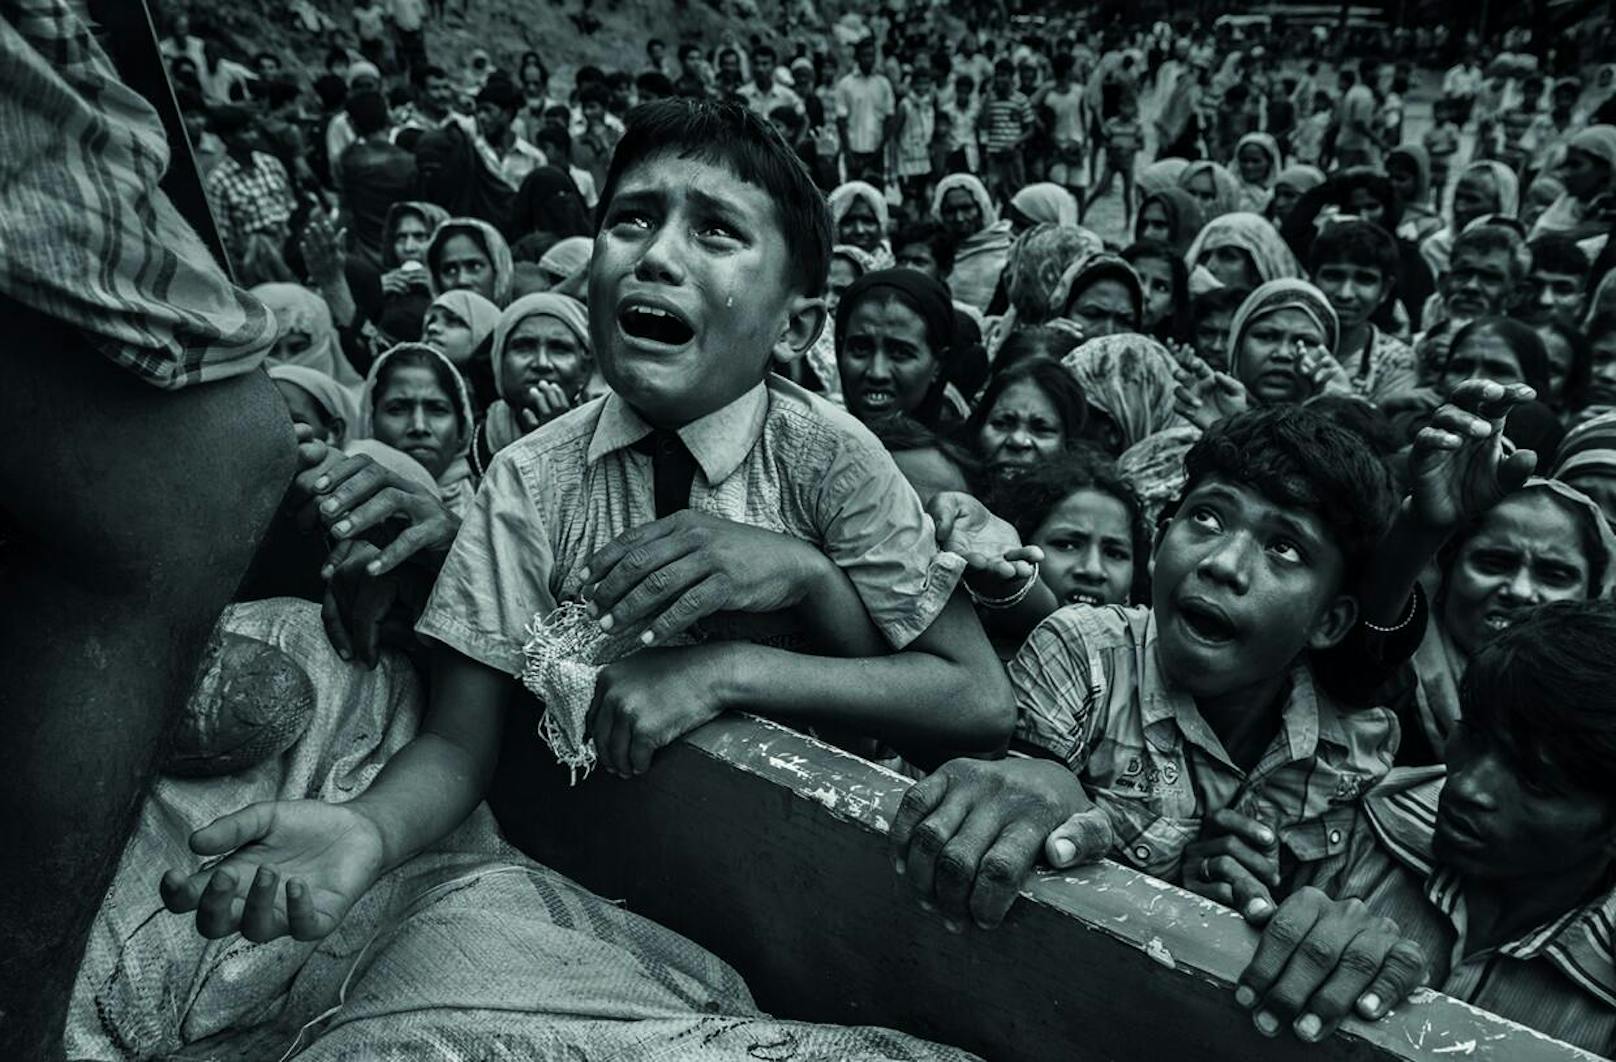 Nach Angriffen auf Dörfer von Rohingya-Muslimen in Myanmar, bei denen ihrer Häuser niedergebrannt wurden, versuchten Hundertausende Rohingya zu Fuß oder mit Booten nach Bangladesch zu entkommen. Viele von ihnen kamen bei der Flucht ums Leben. Nach UNICEF-Angaben waren über 50 Prozent der Flüchtenden Kinder. In Bangladesch wurden die Geflüchteten in bestehenden und behelfsmäßigen Lagern untergebracht. Die Grundversorgung wurde kritisch; nach Angaben eines Mediziners von Ärzte ohne Grenzen drohten Krankheiten durch durch den Mangel an sauberem Wasser, Unterkünften und sanitären Einrichtungen.